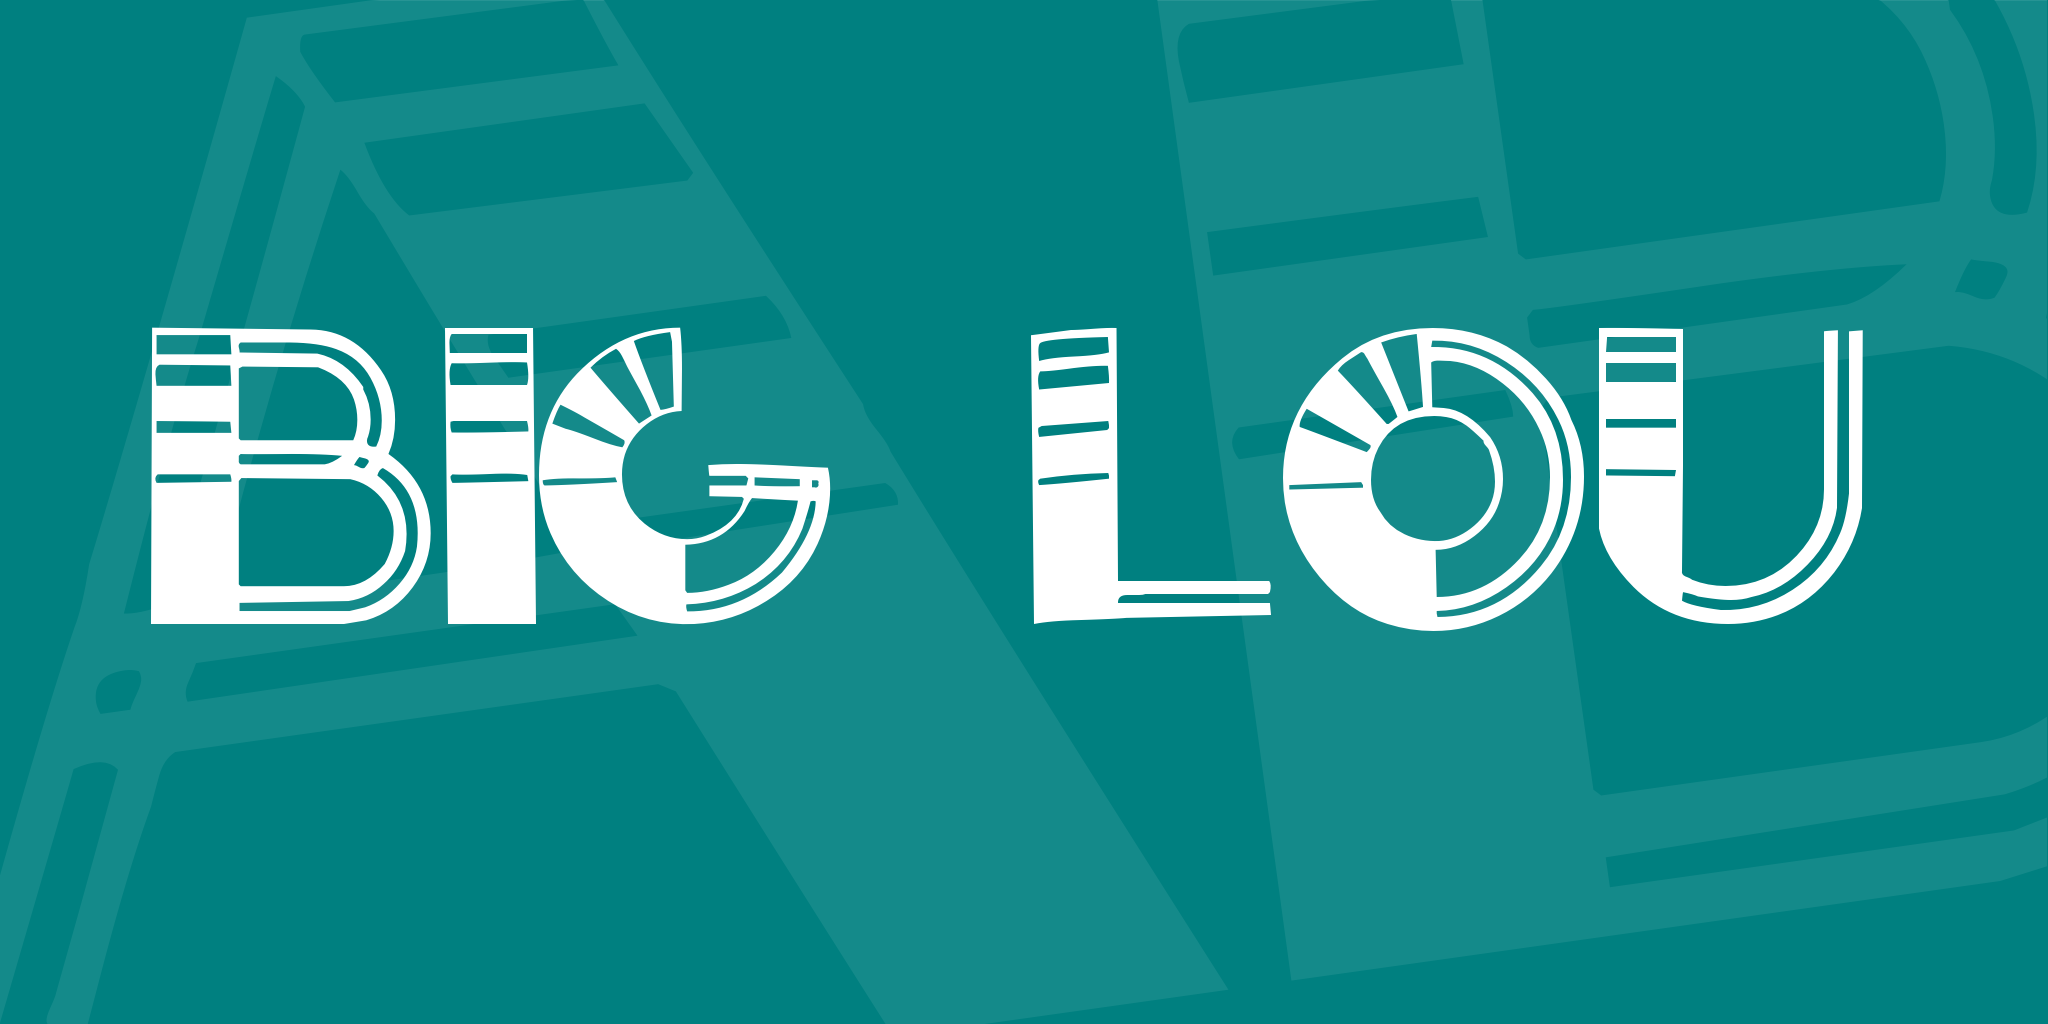 Big Lou Font FREE Download & Similar Fonts | FontGet